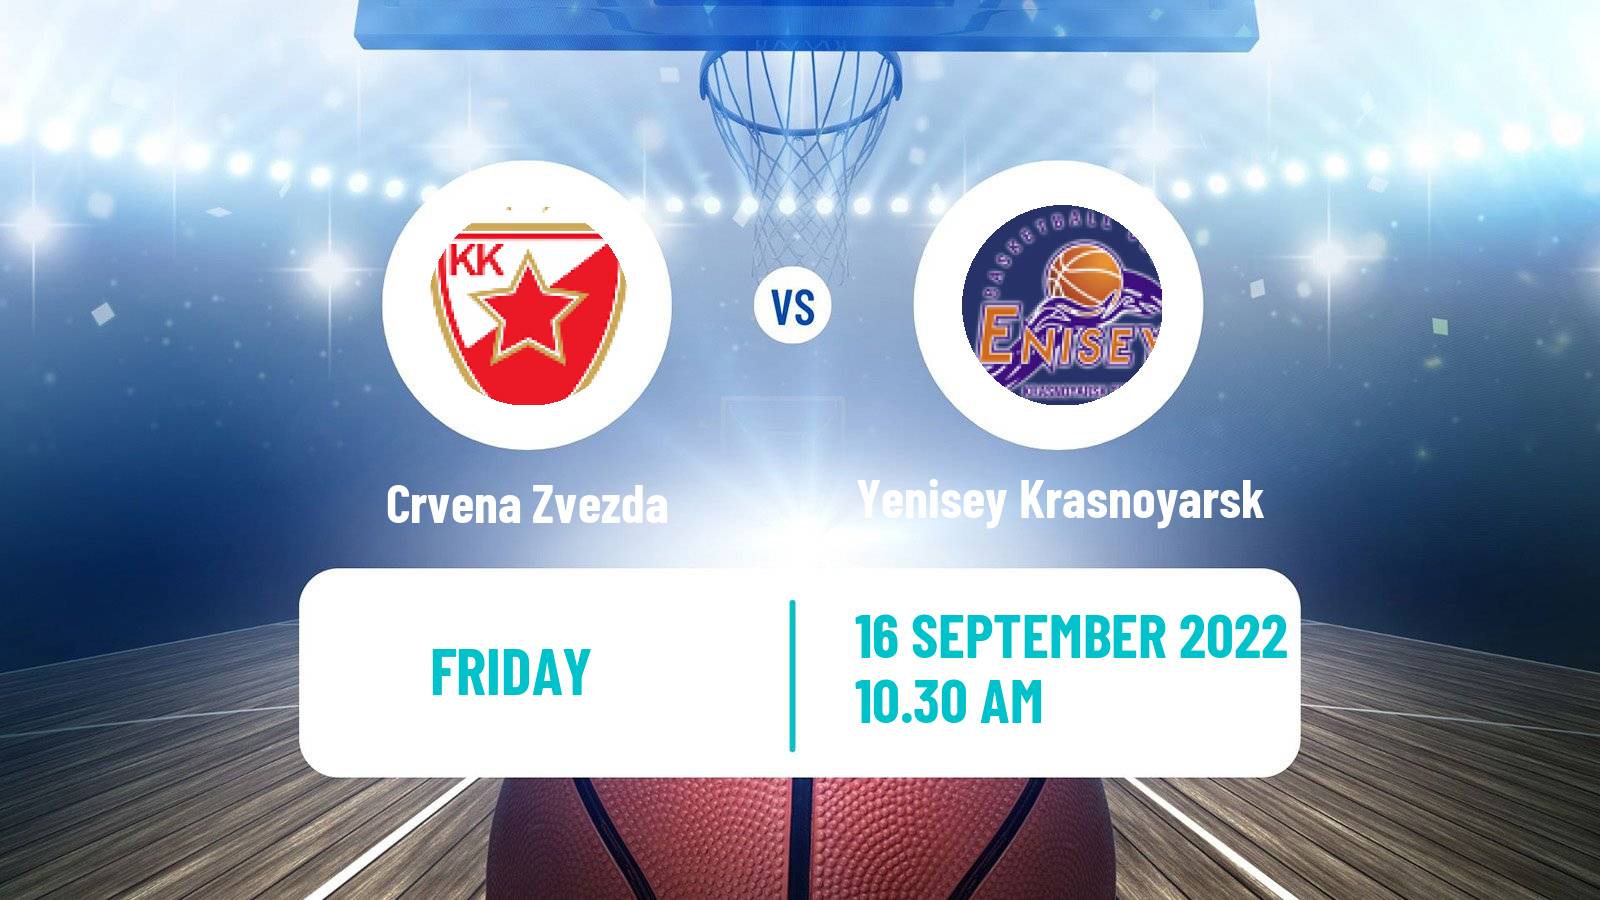 Basketball Club Friendly Basketball Crvena Zvezda - Yenisey Krasnoyarsk